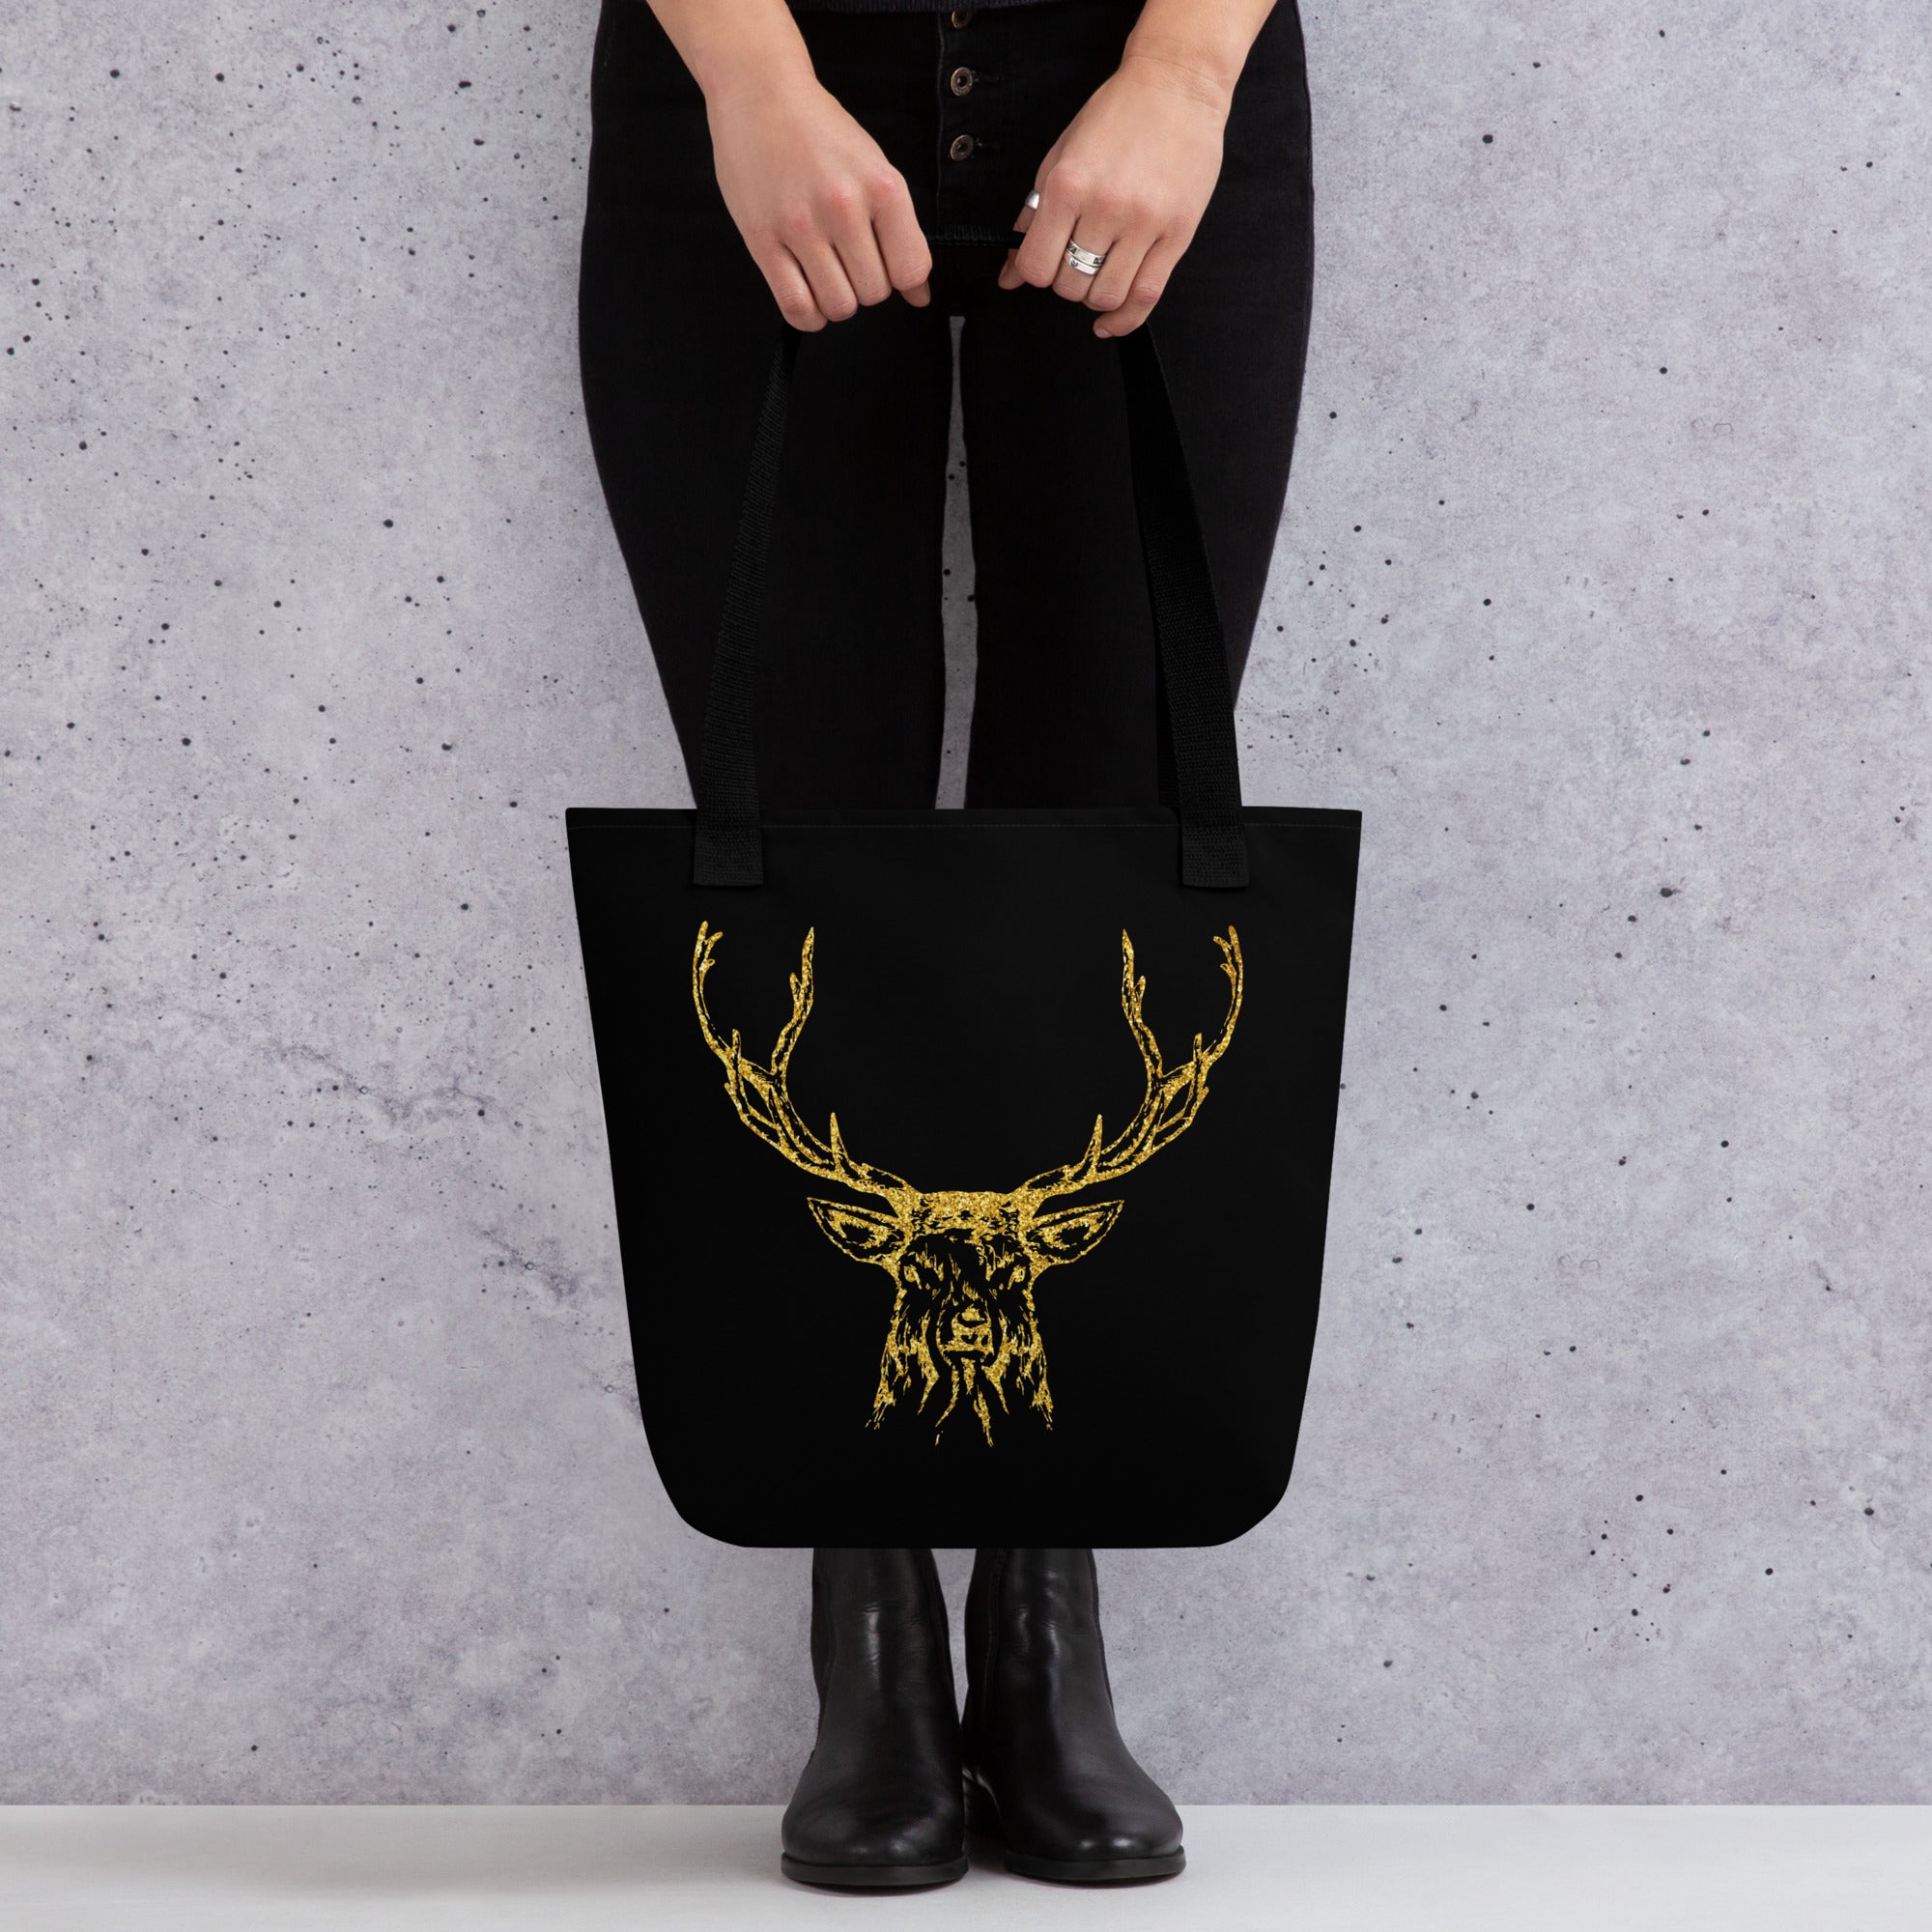 Tote bag- Antlers Black